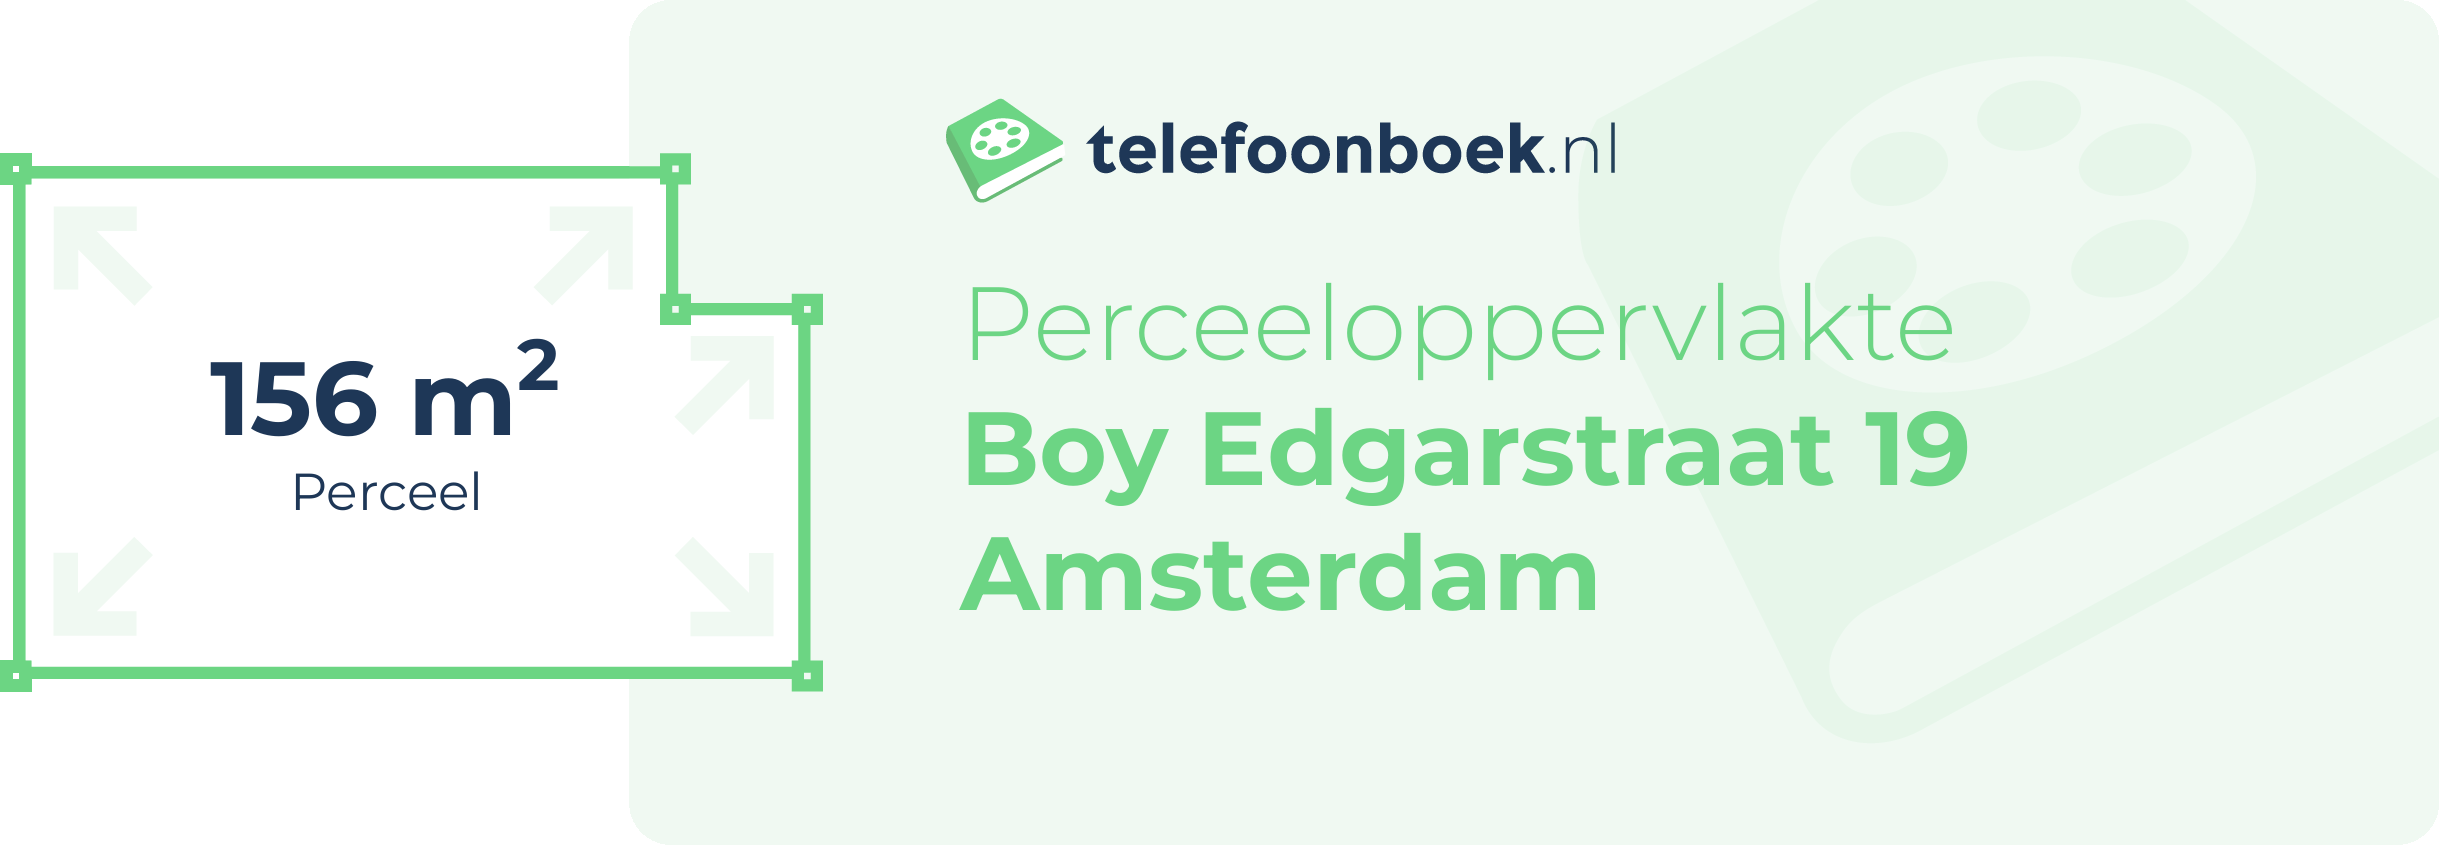 Perceeloppervlakte Boy Edgarstraat 19 Amsterdam